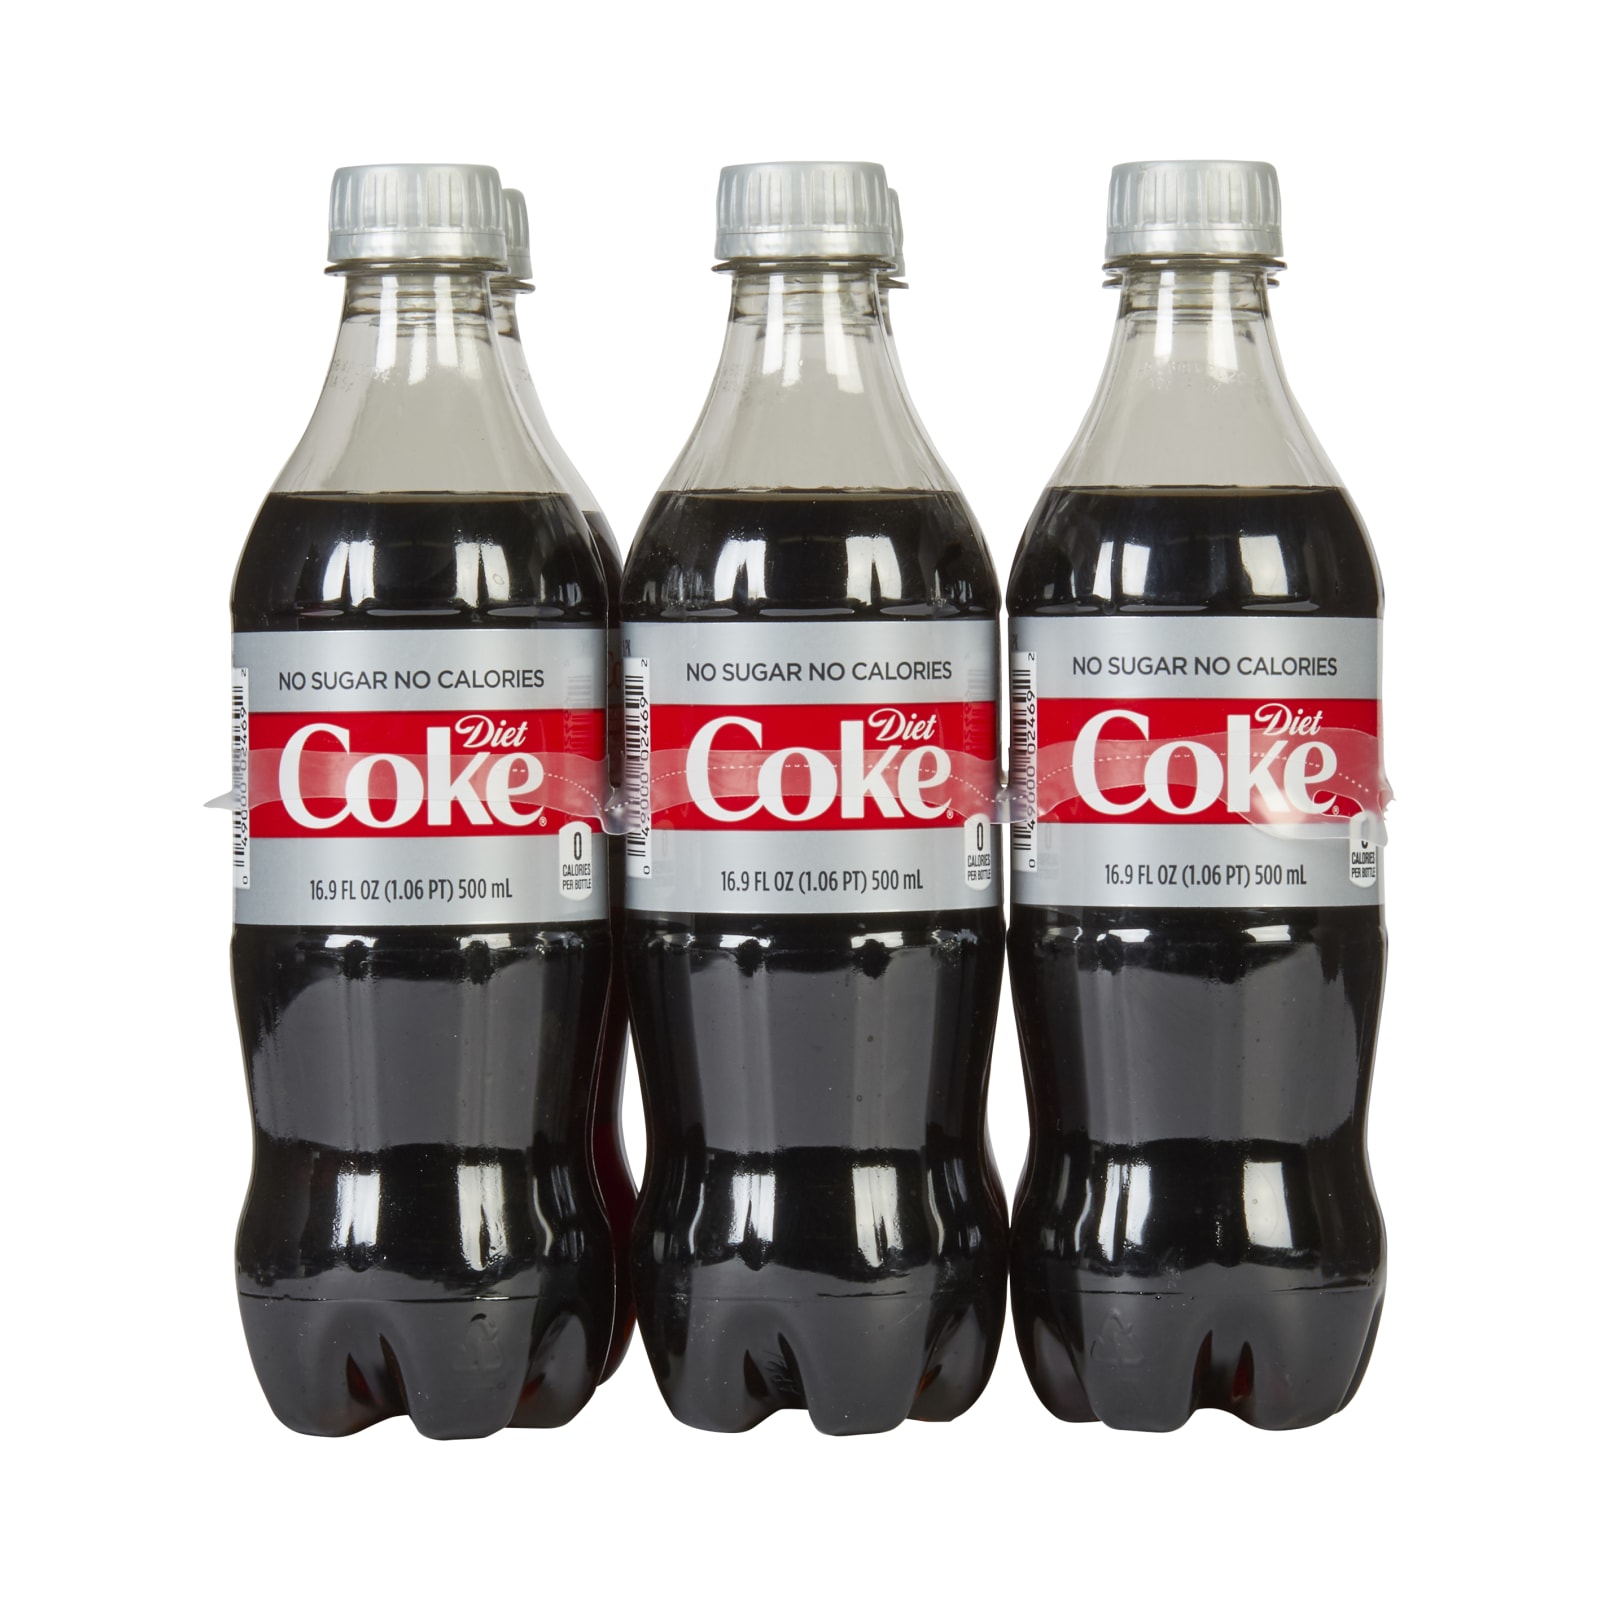  Pepsi Zero Sugar, 16.9oz Bottles (6 Pack) : Home & Kitchen